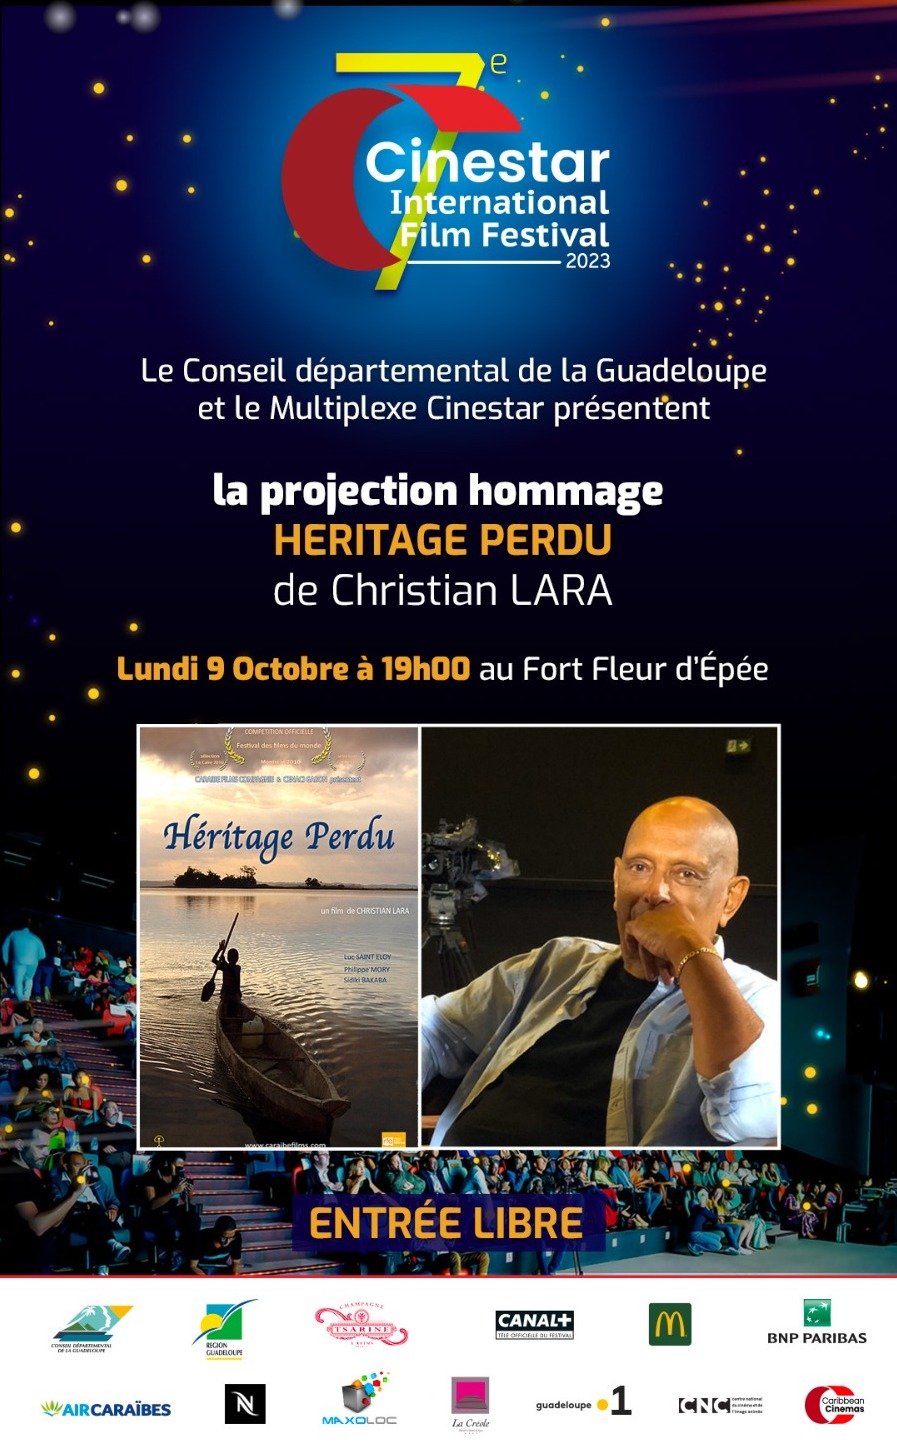 Le conseil départemental de la Guadeloupe et le Cinéstar présente Heritage Perdu